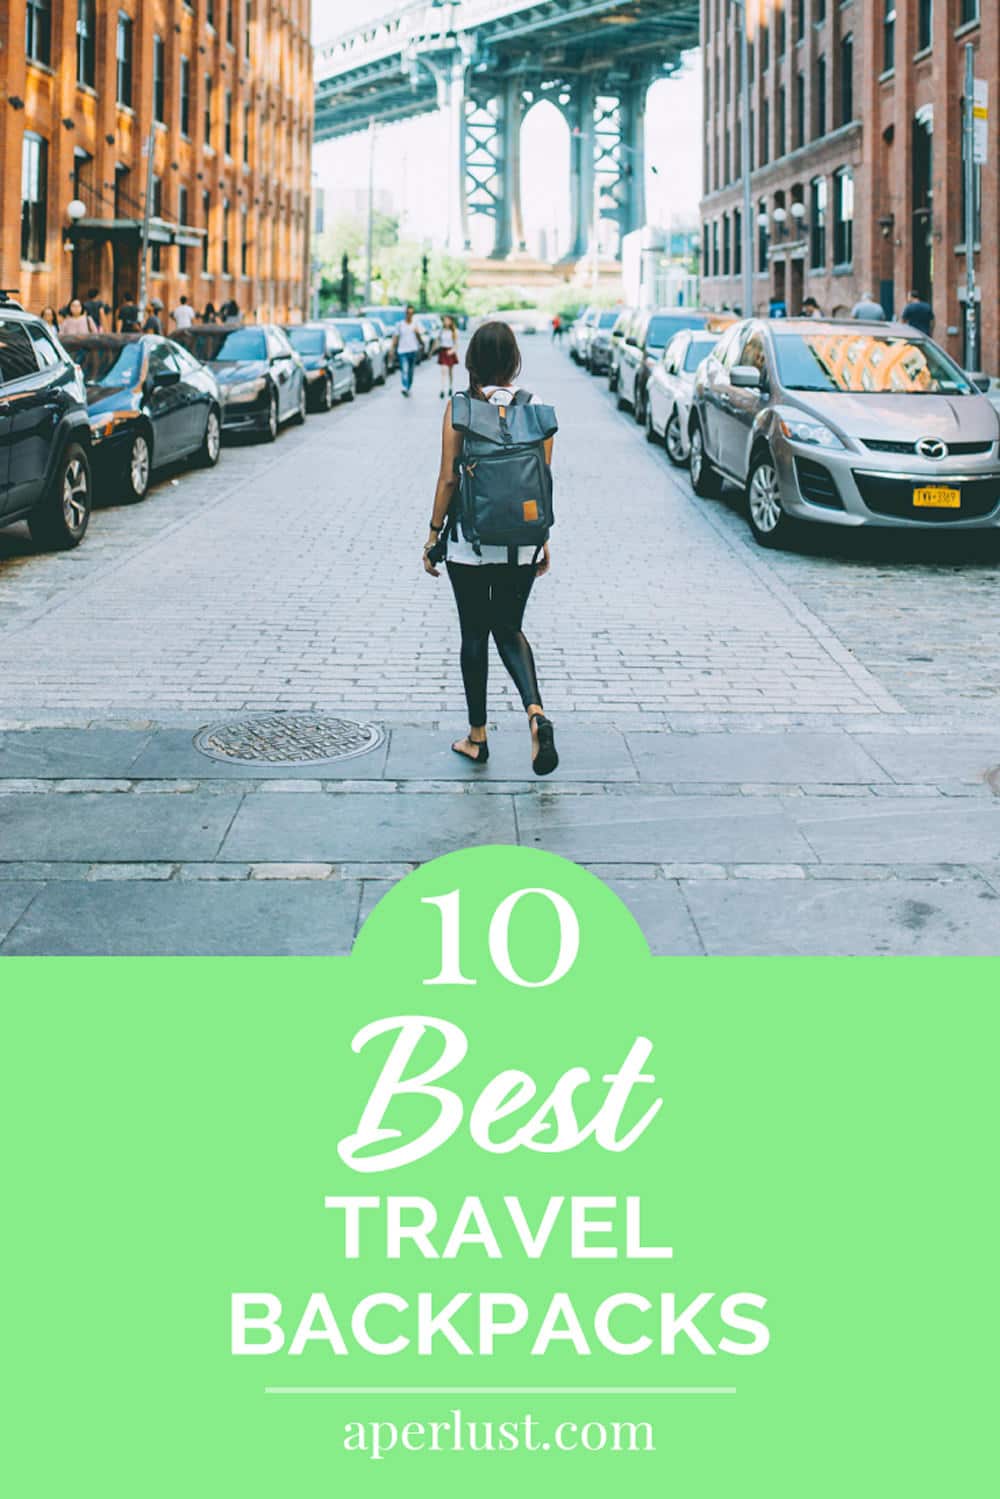 10 best travel backpacks Pinterest Pin